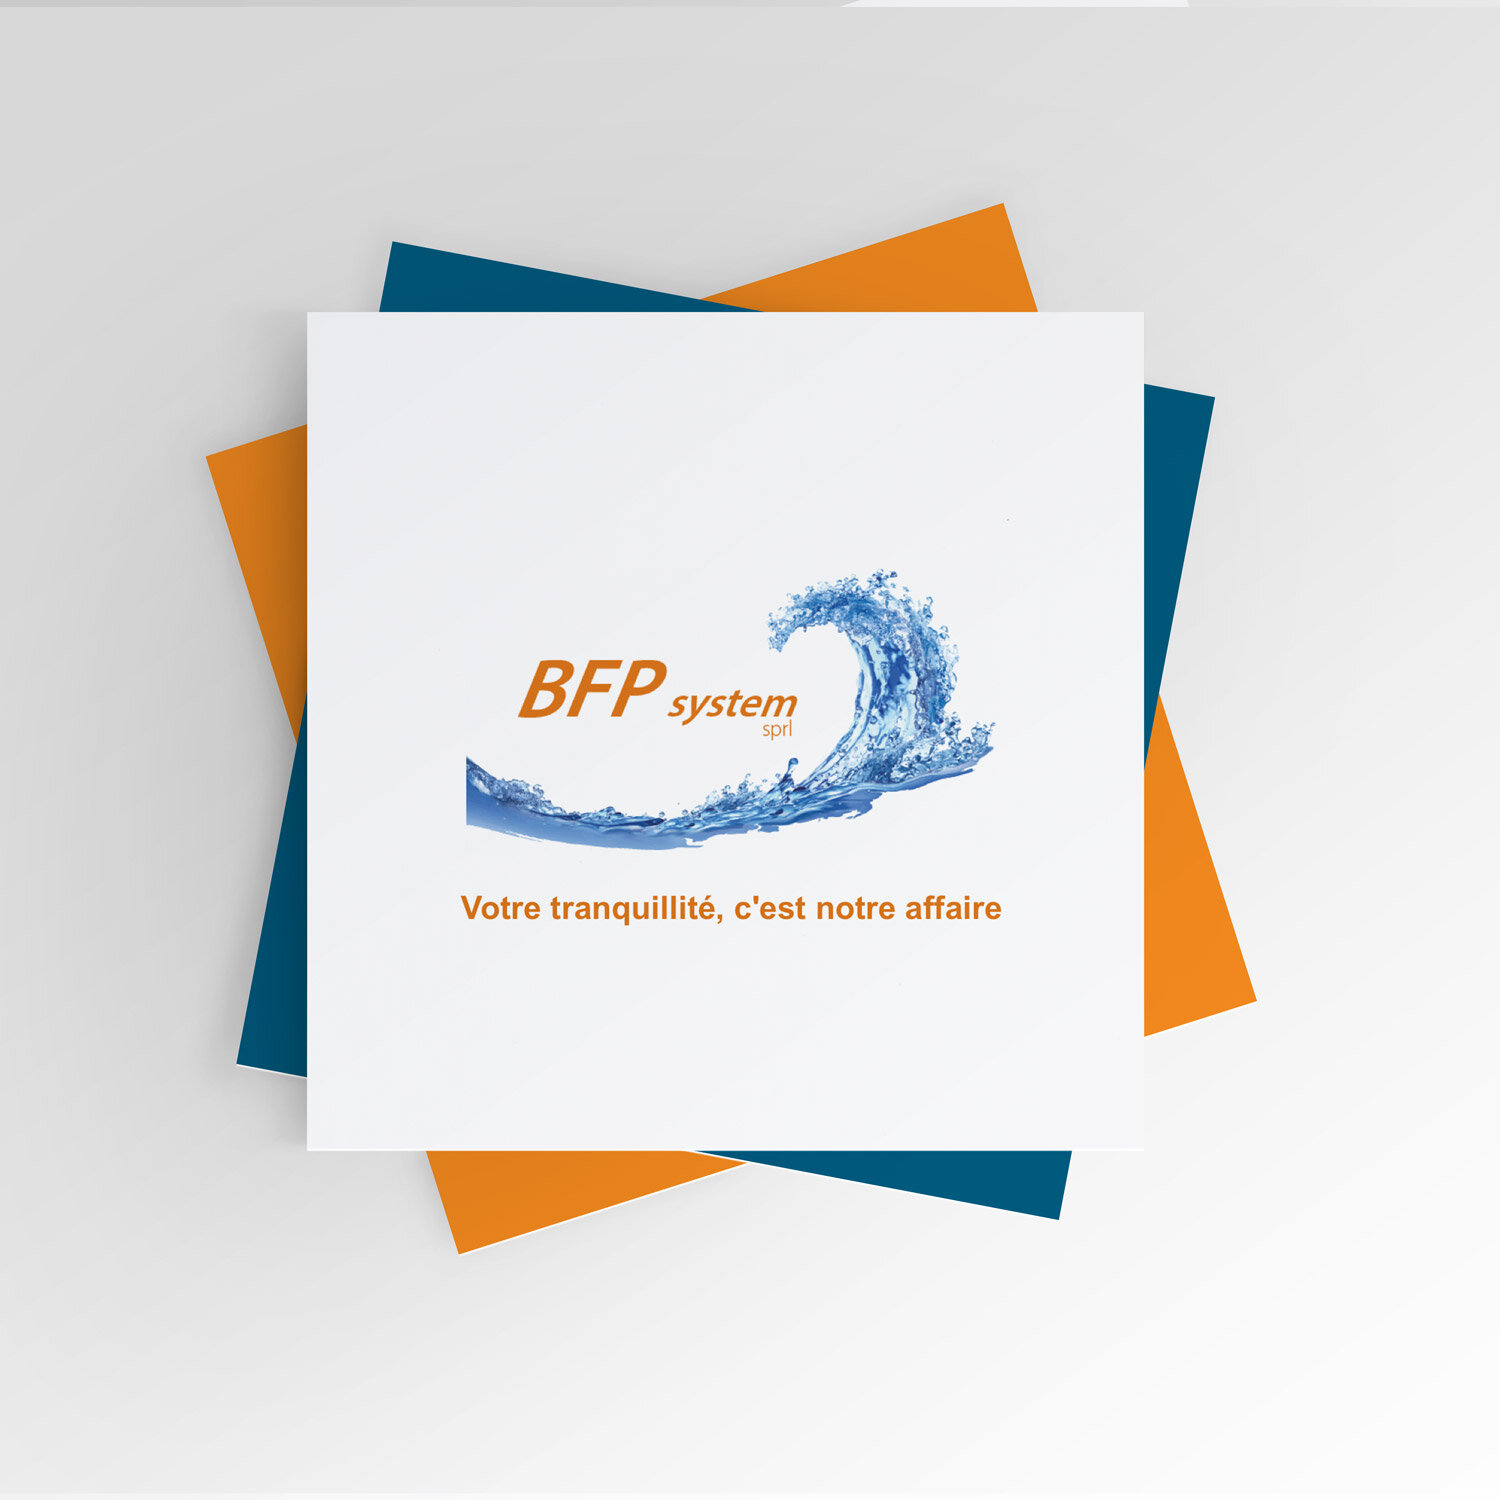 BFP---Old-logo-mockup.jpg